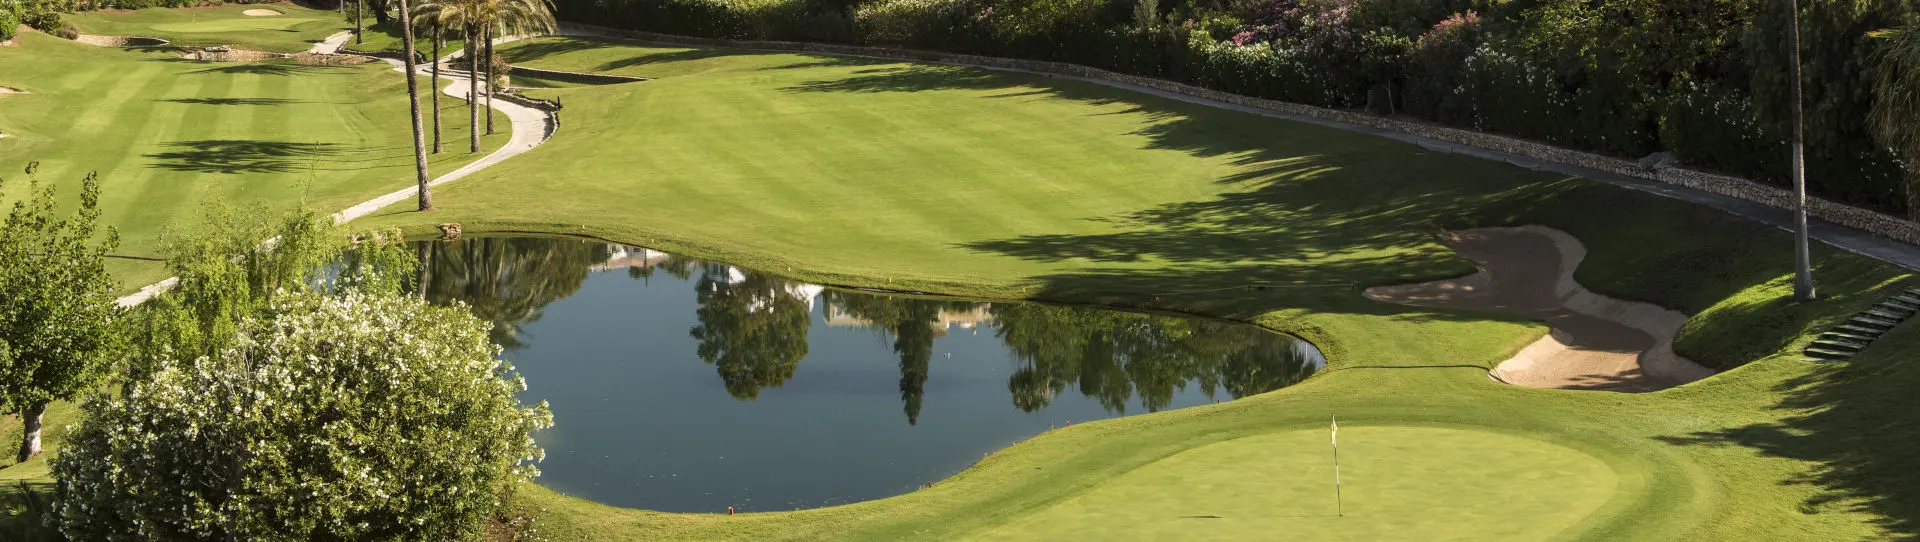 Spain golf courses - La Quinta Golf Course - Photo 2